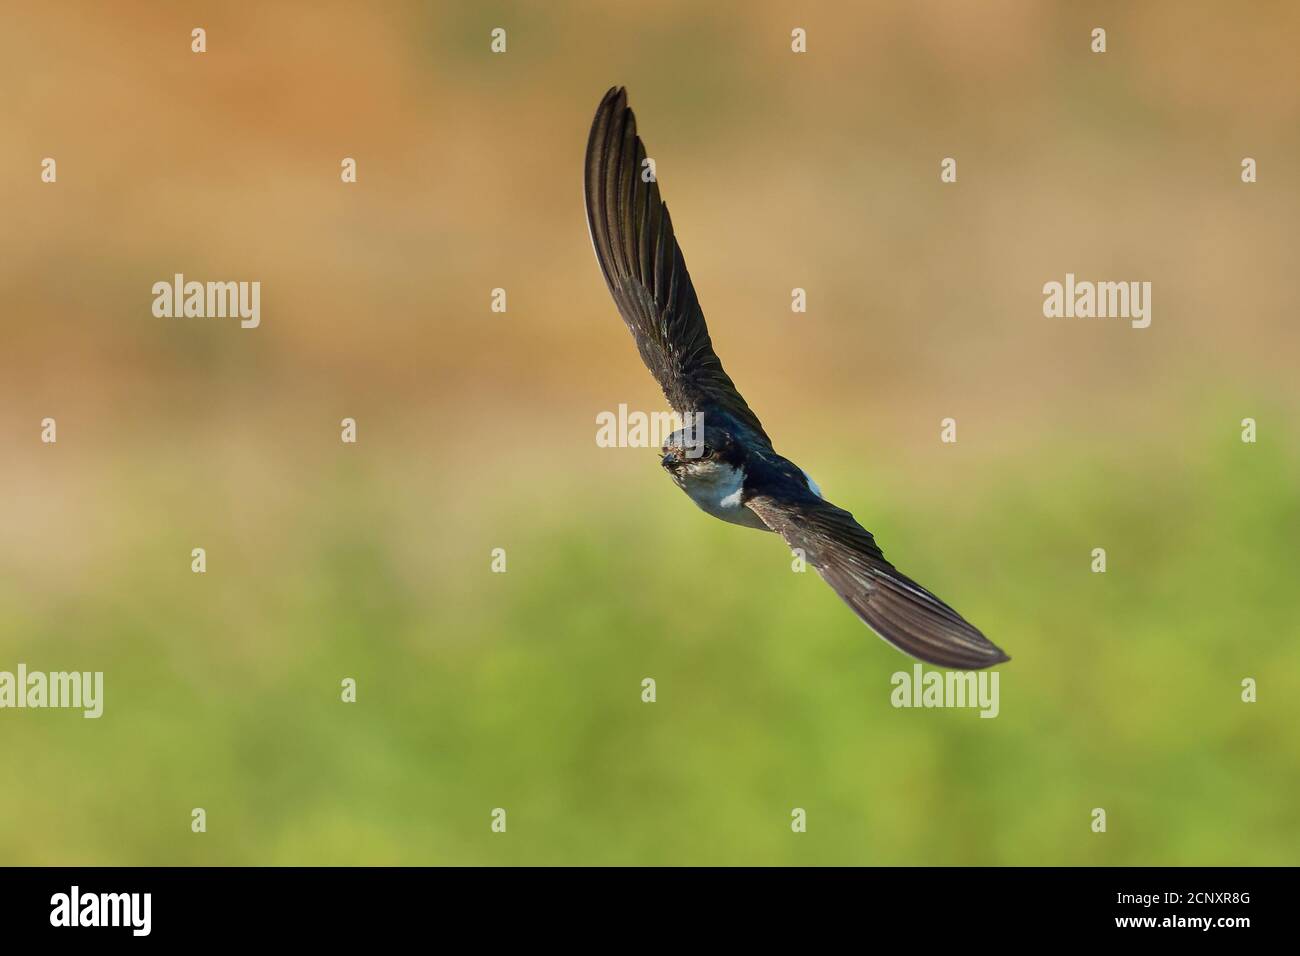 Common House-Martin - Delichon urbicum schwarz und weiß fliegender Vogel, der Insekten isst und jagt, auch nördliches Haus martin genannt, Schwalbenfamilie, bree Stockfoto